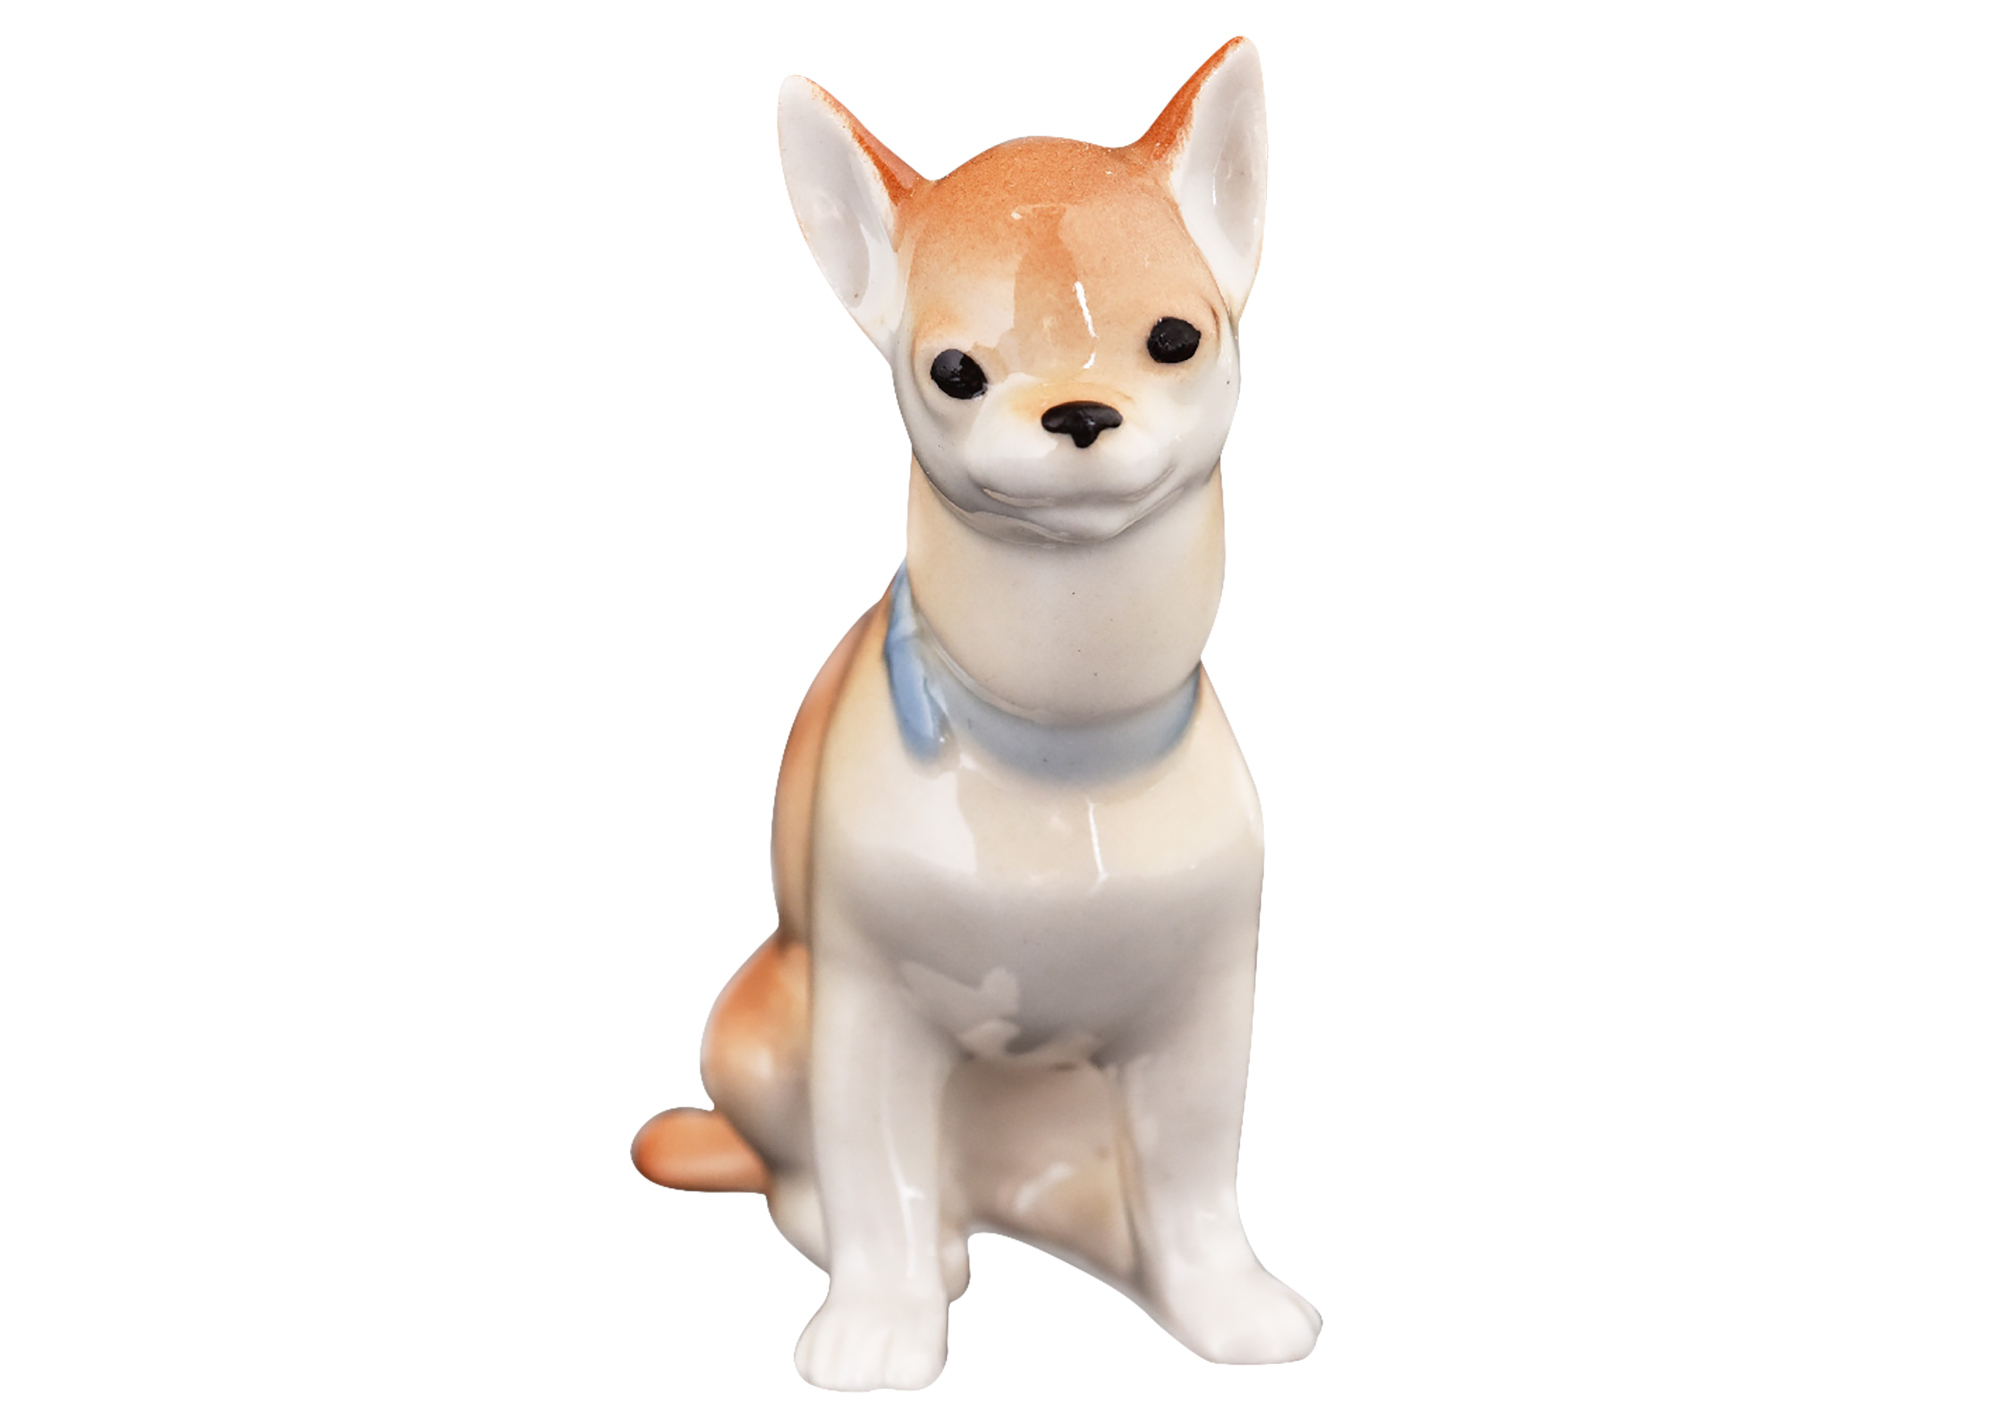 Buy Chihuahua Dog "Jorge" Porcelain Figurine 2.9" at GoldenCockerel.com